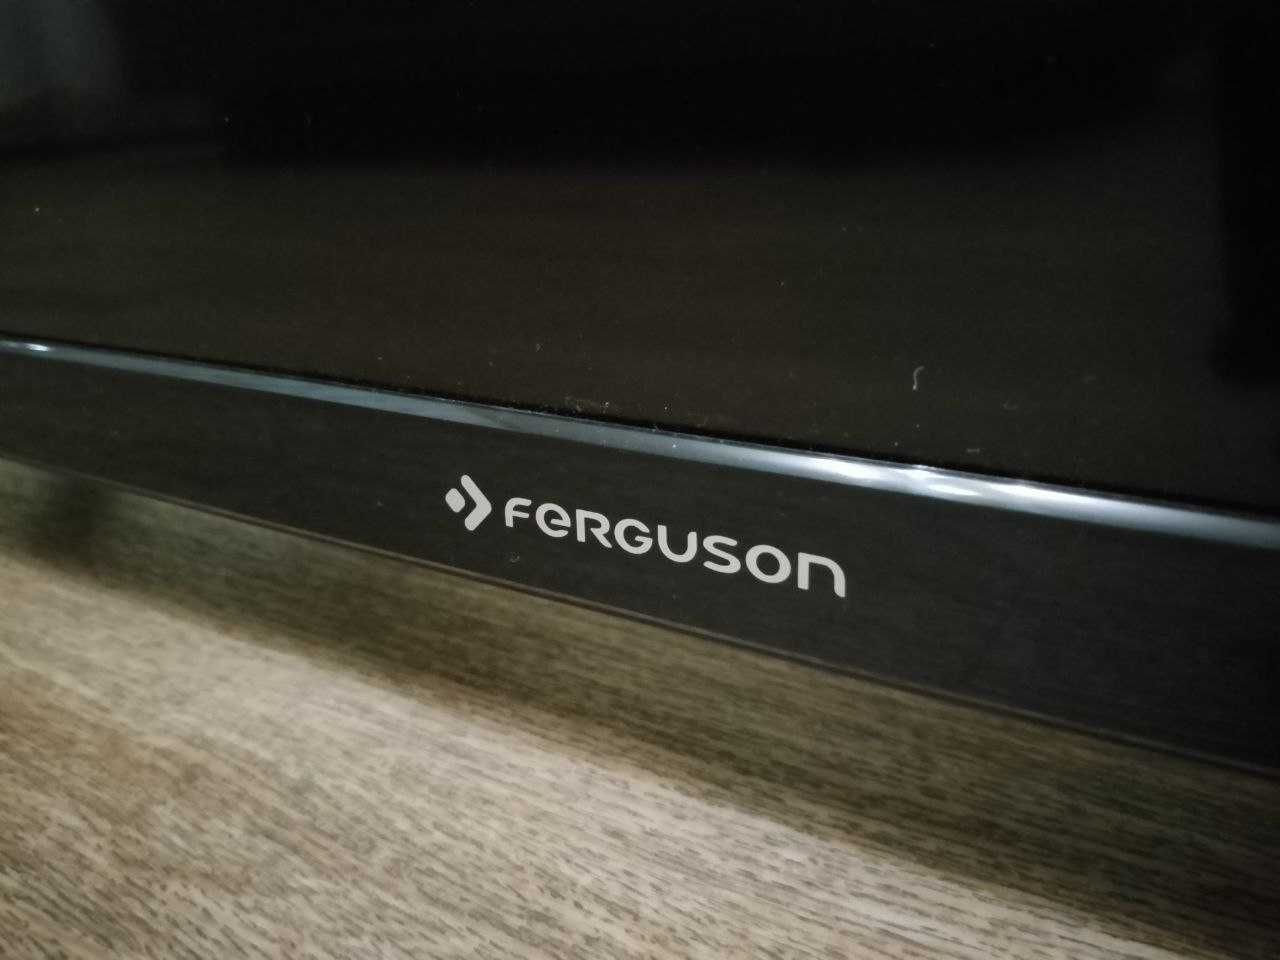 Продам телевизор Ferguson T232FHD506 мало використаний